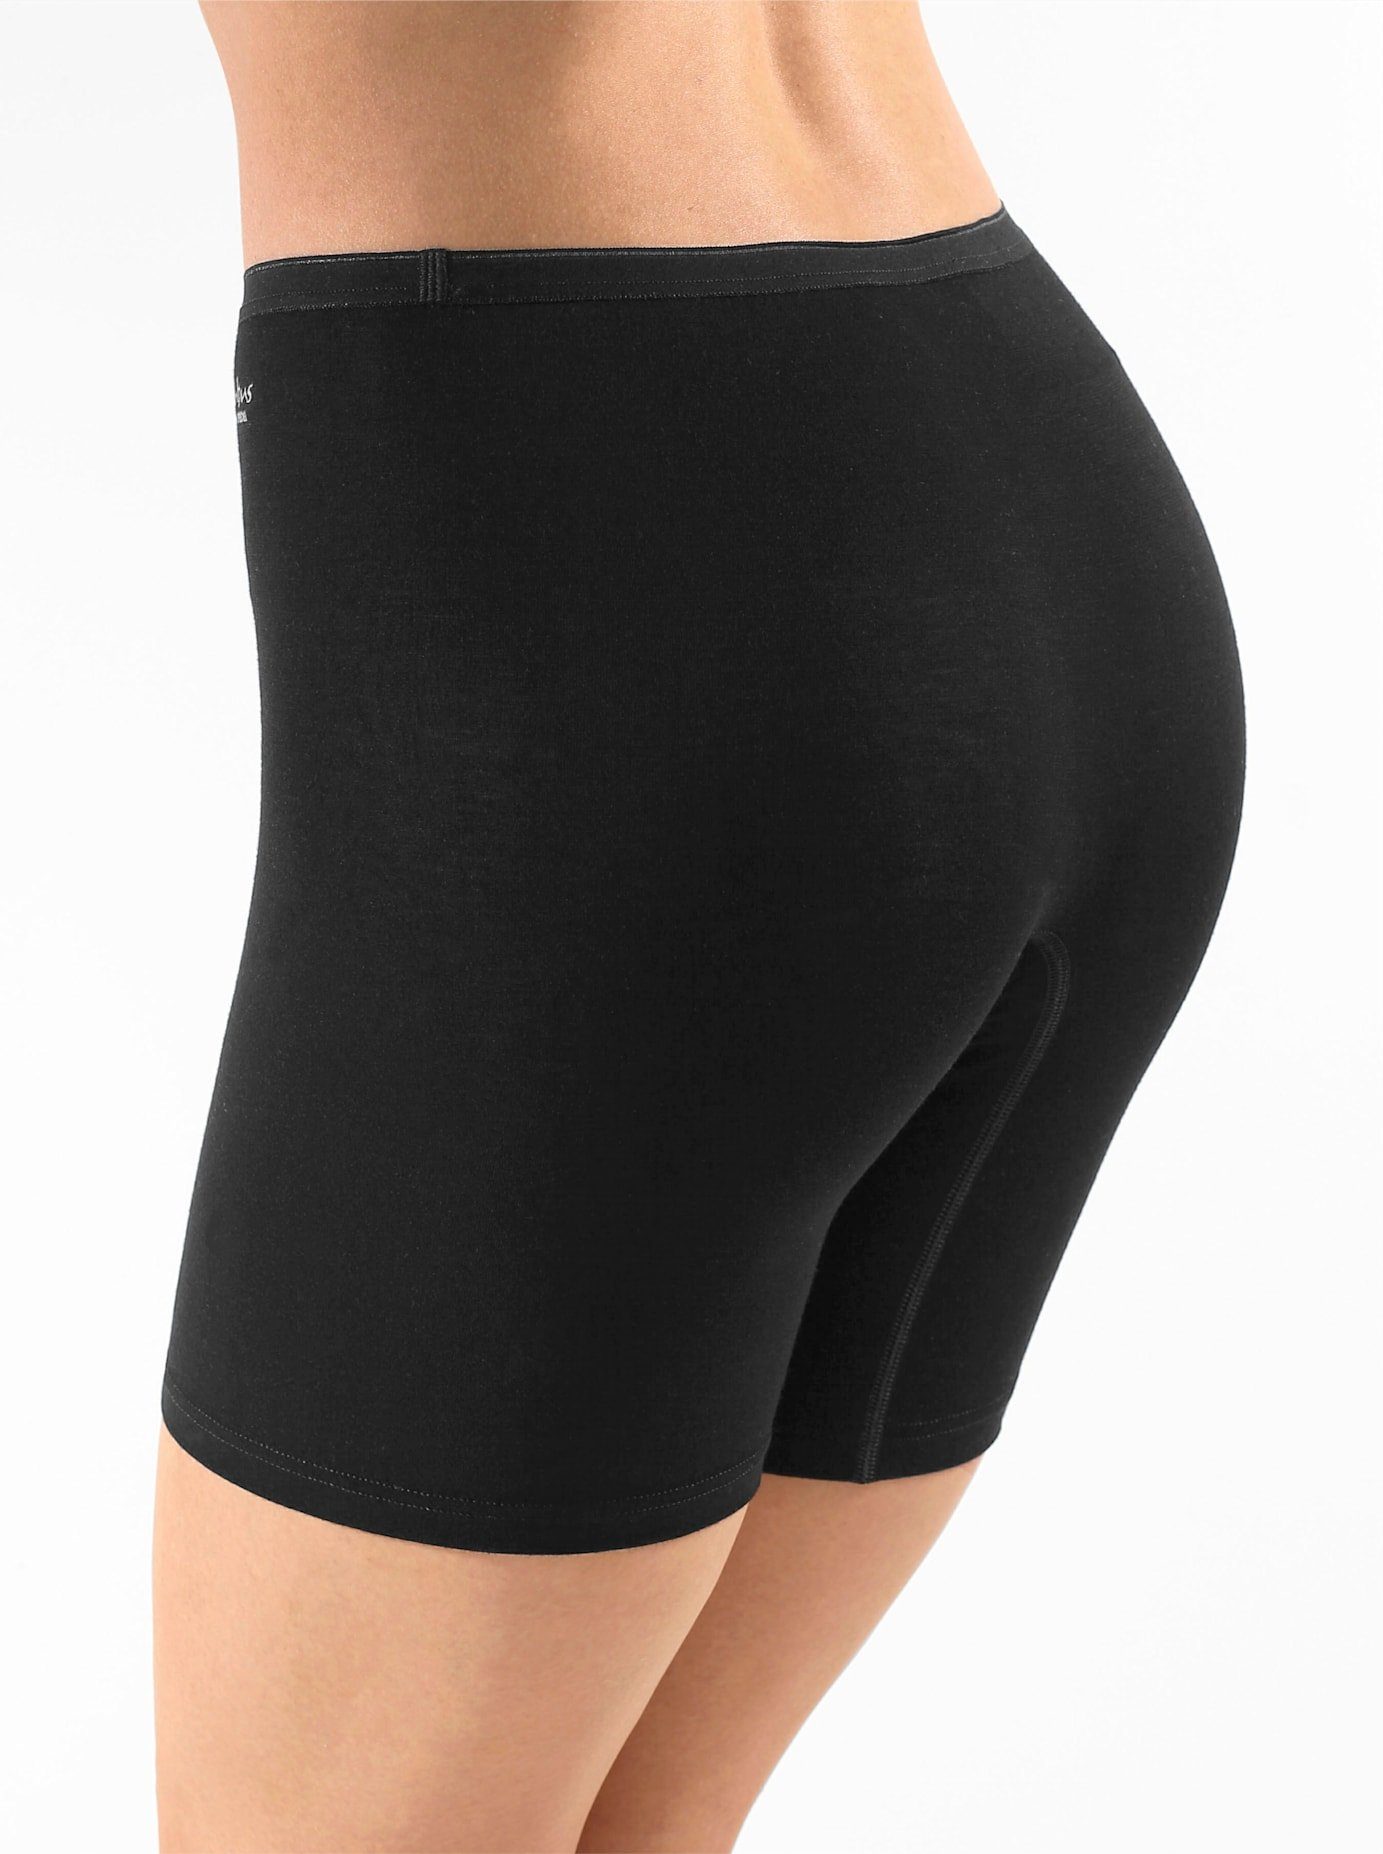 Damen lange Unterhosen online kaufen | OTTO